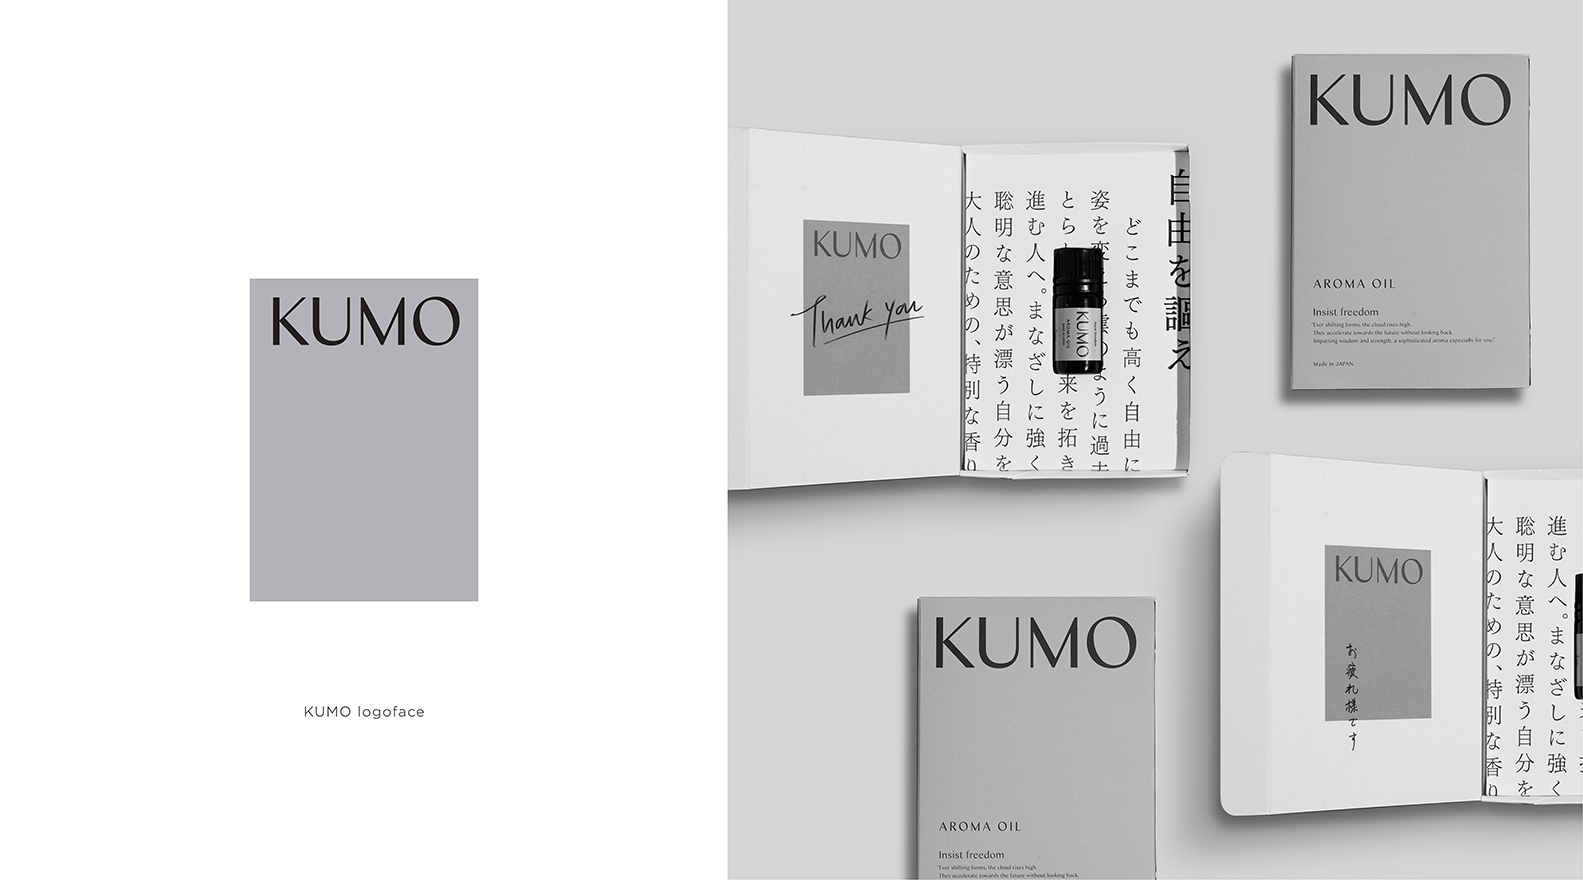 KUMO_image6